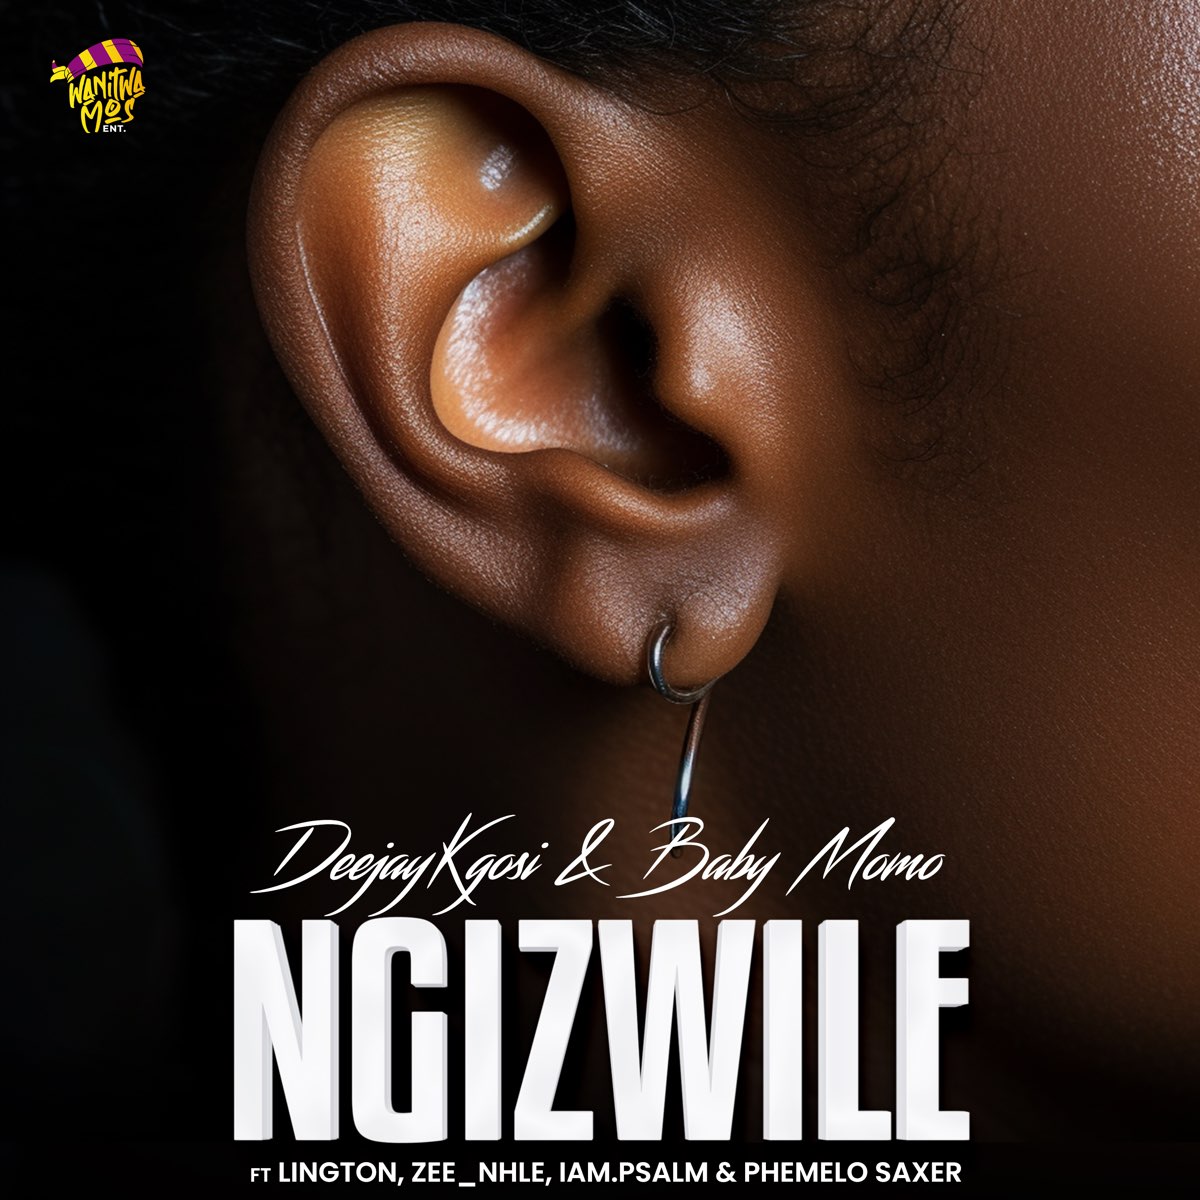 DeejayKgosi & Baby Momo – Ngizwile ft. Lington, Zee_nhle, iam.Psalm & Phemelo Saxer mp3 download free lyrics